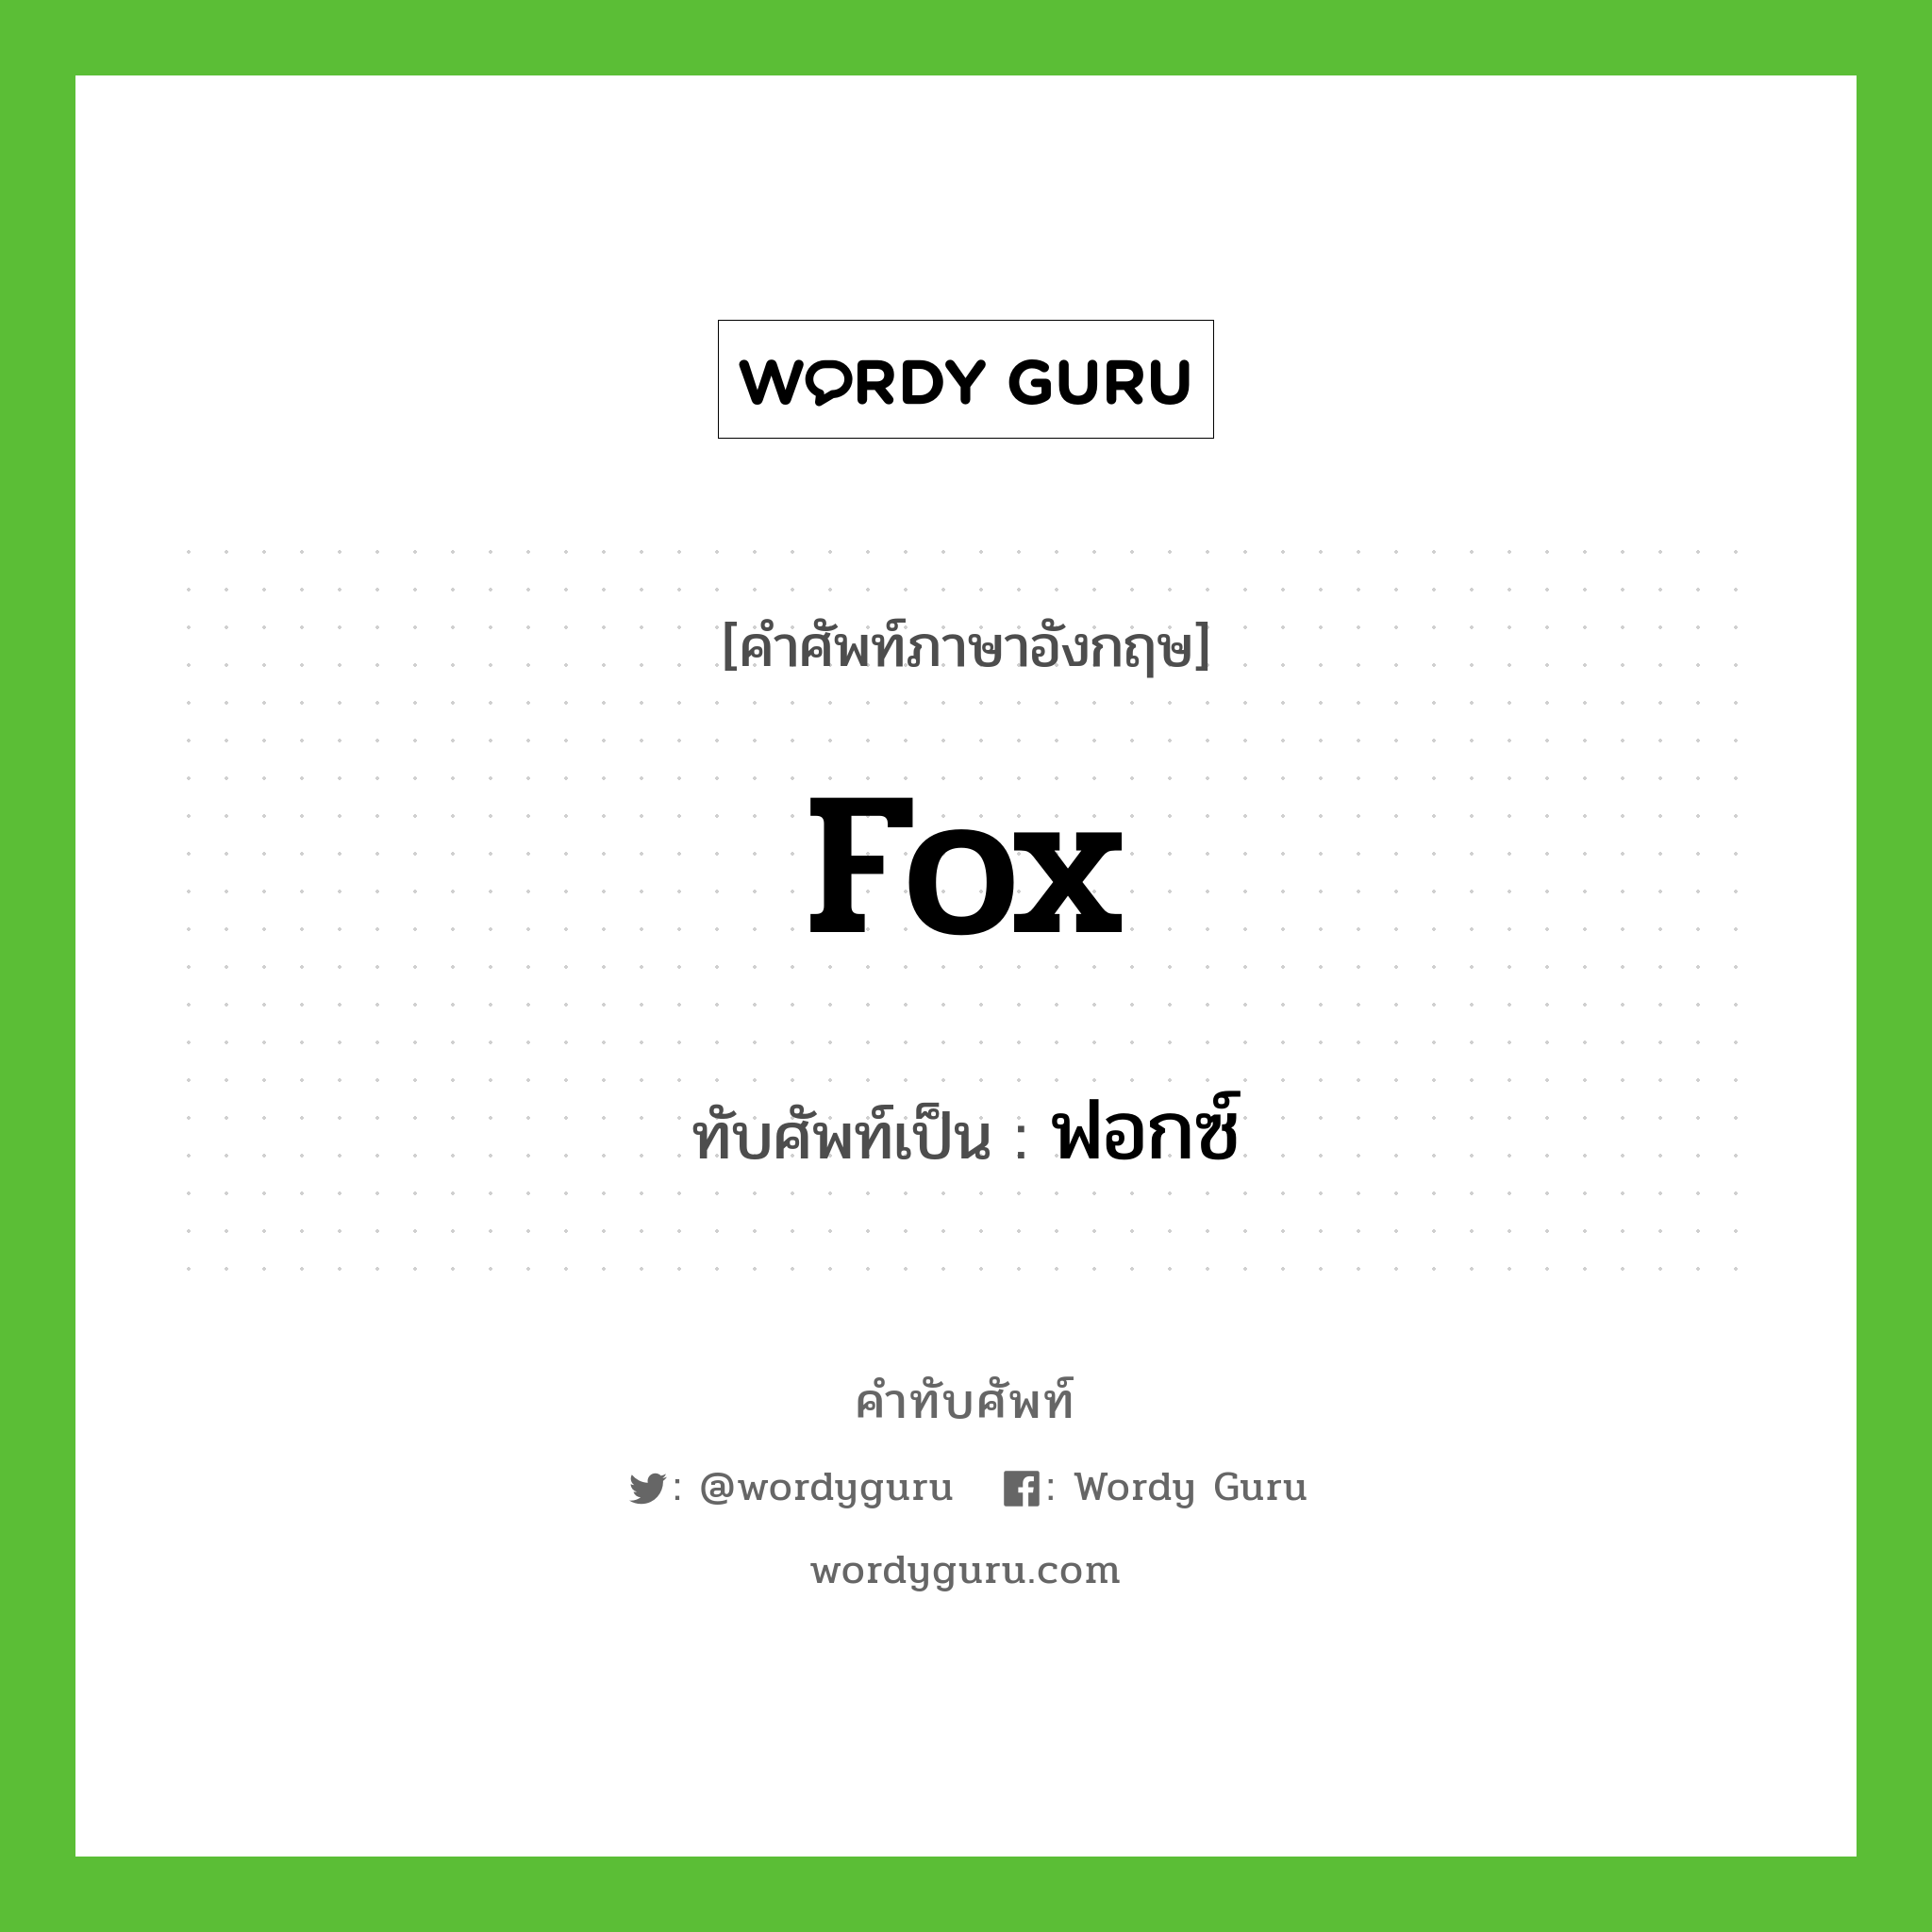 fox เขียนเป็นคำไทยว่าอะไร?, คำศัพท์ภาษาอังกฤษ fox ทับศัพท์เป็น ฟอกซ์